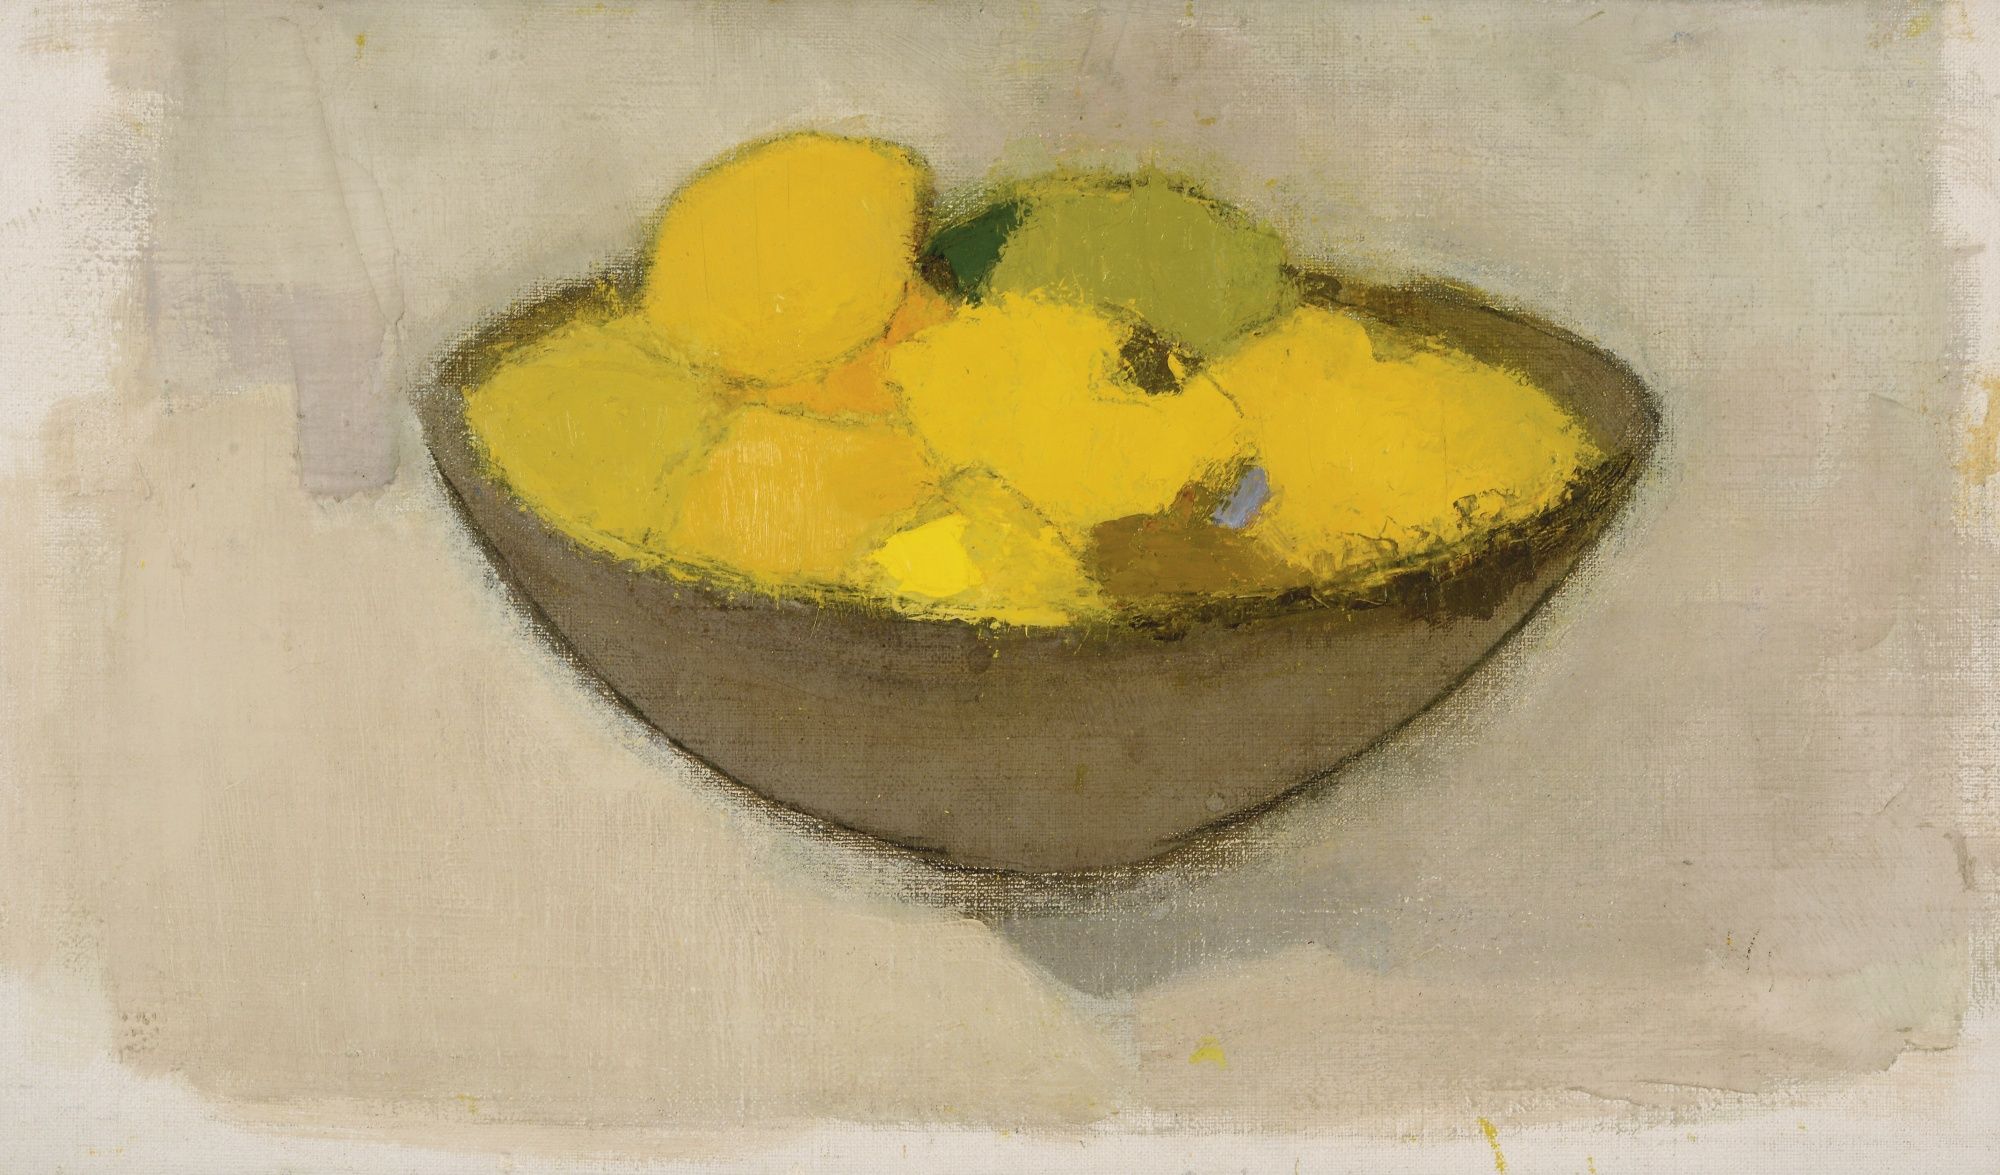 Limoni in una ciotola by Helene Schjerfbeck - 1934 - 34,50 x 59,50 cm collezione privata